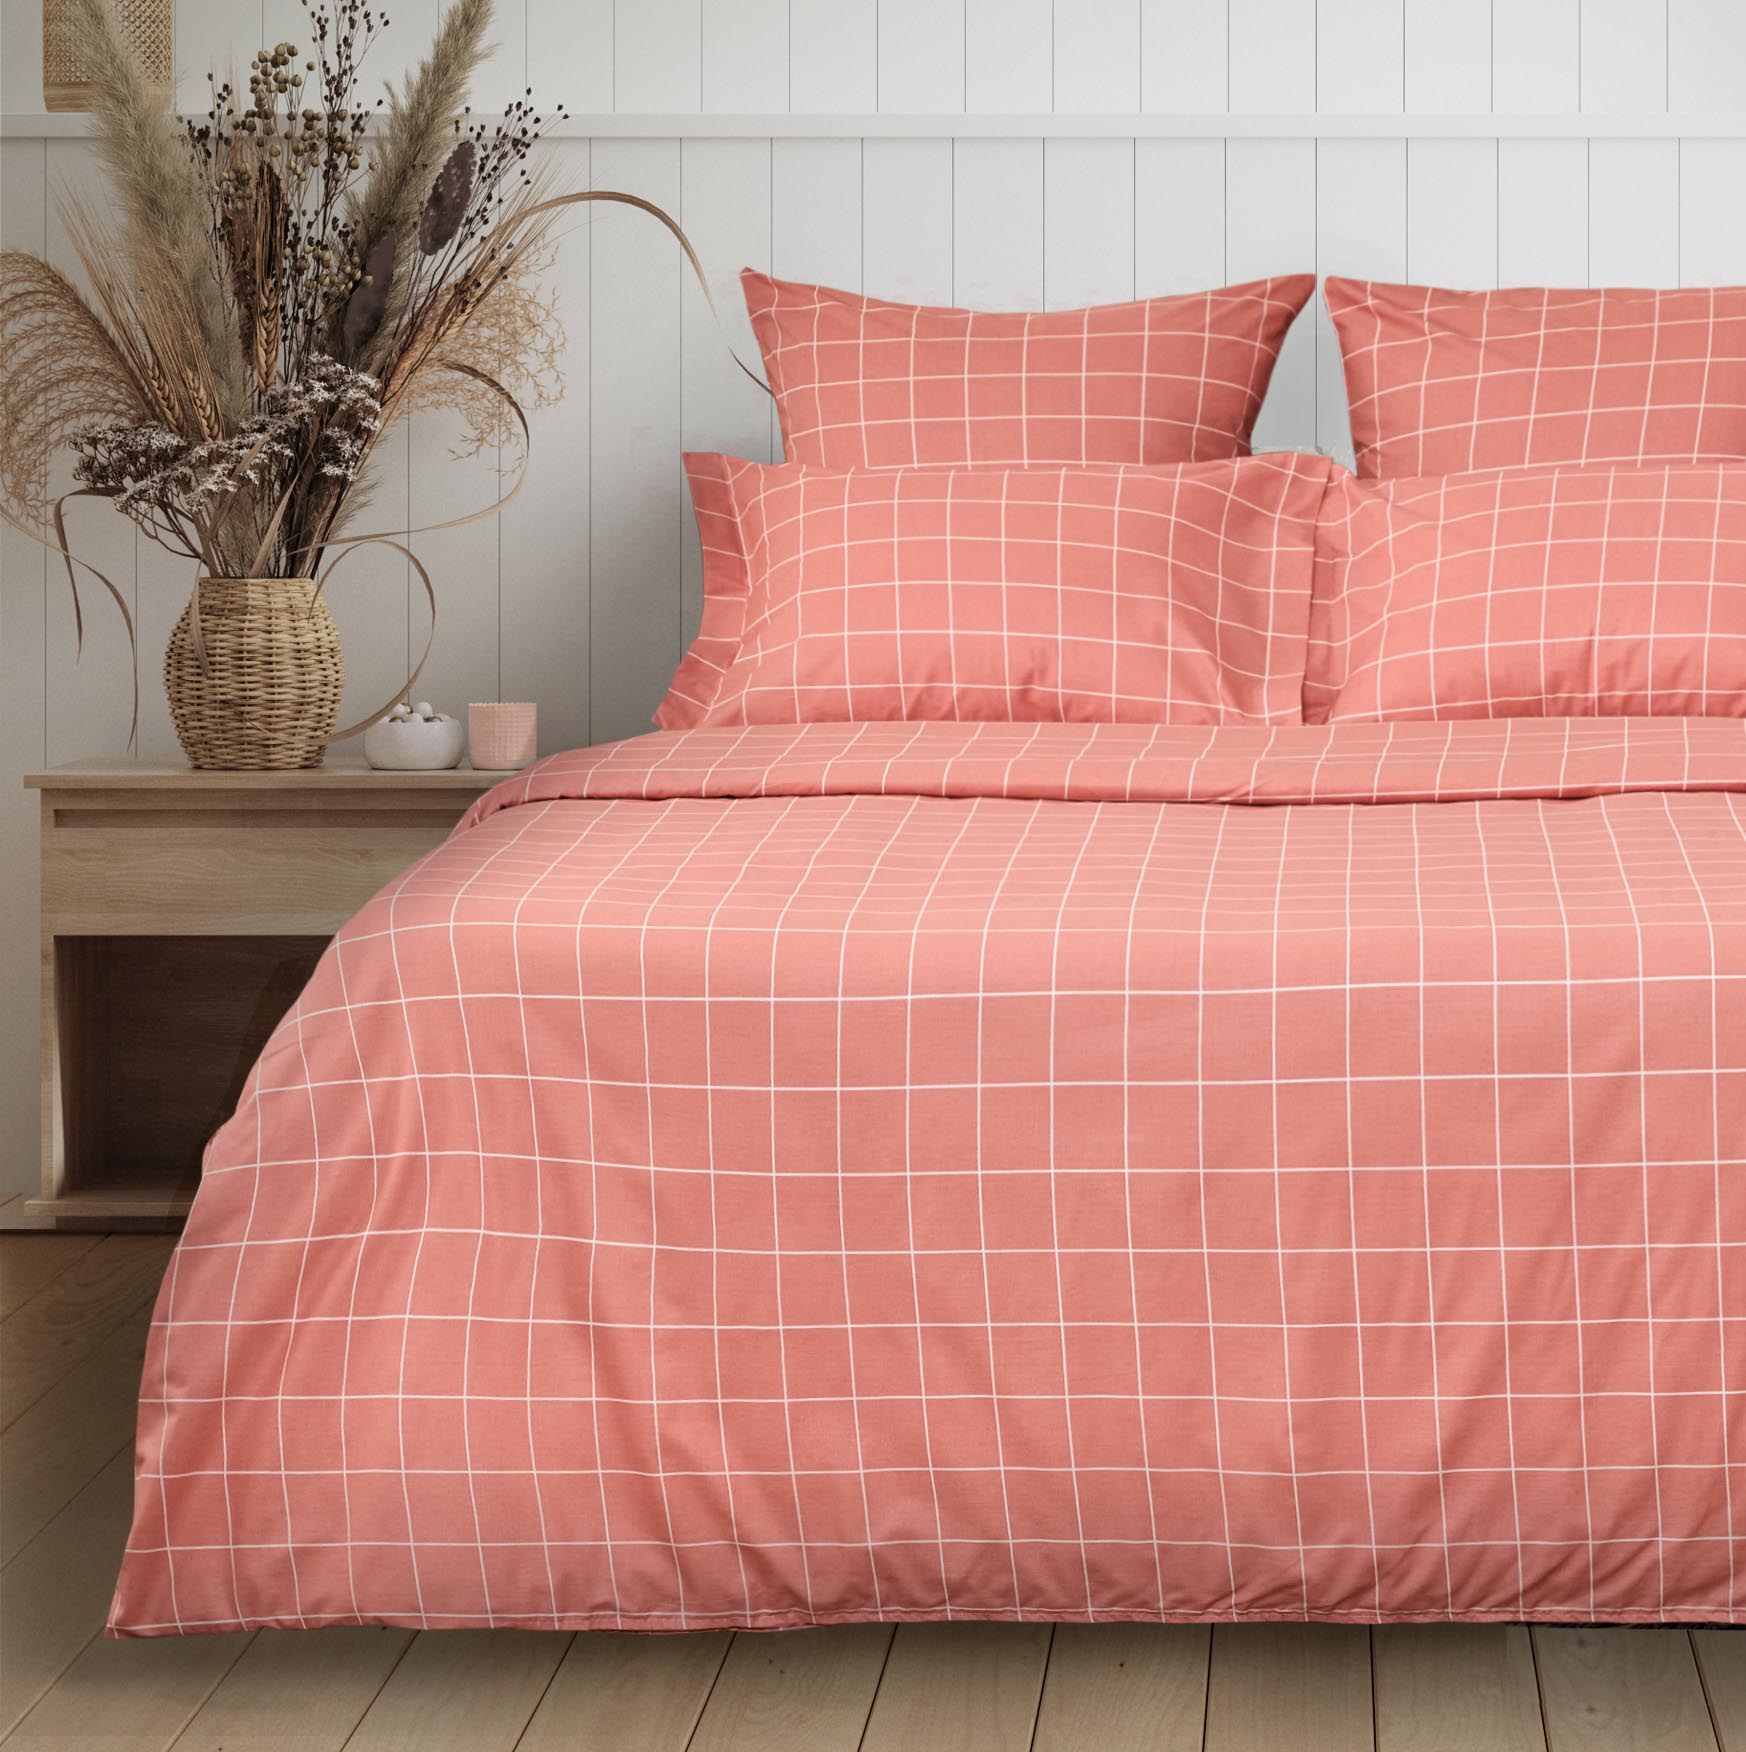 Постельное белье полукомплект Quadretti, кораллово-розовое постельное белье полукомплект argento